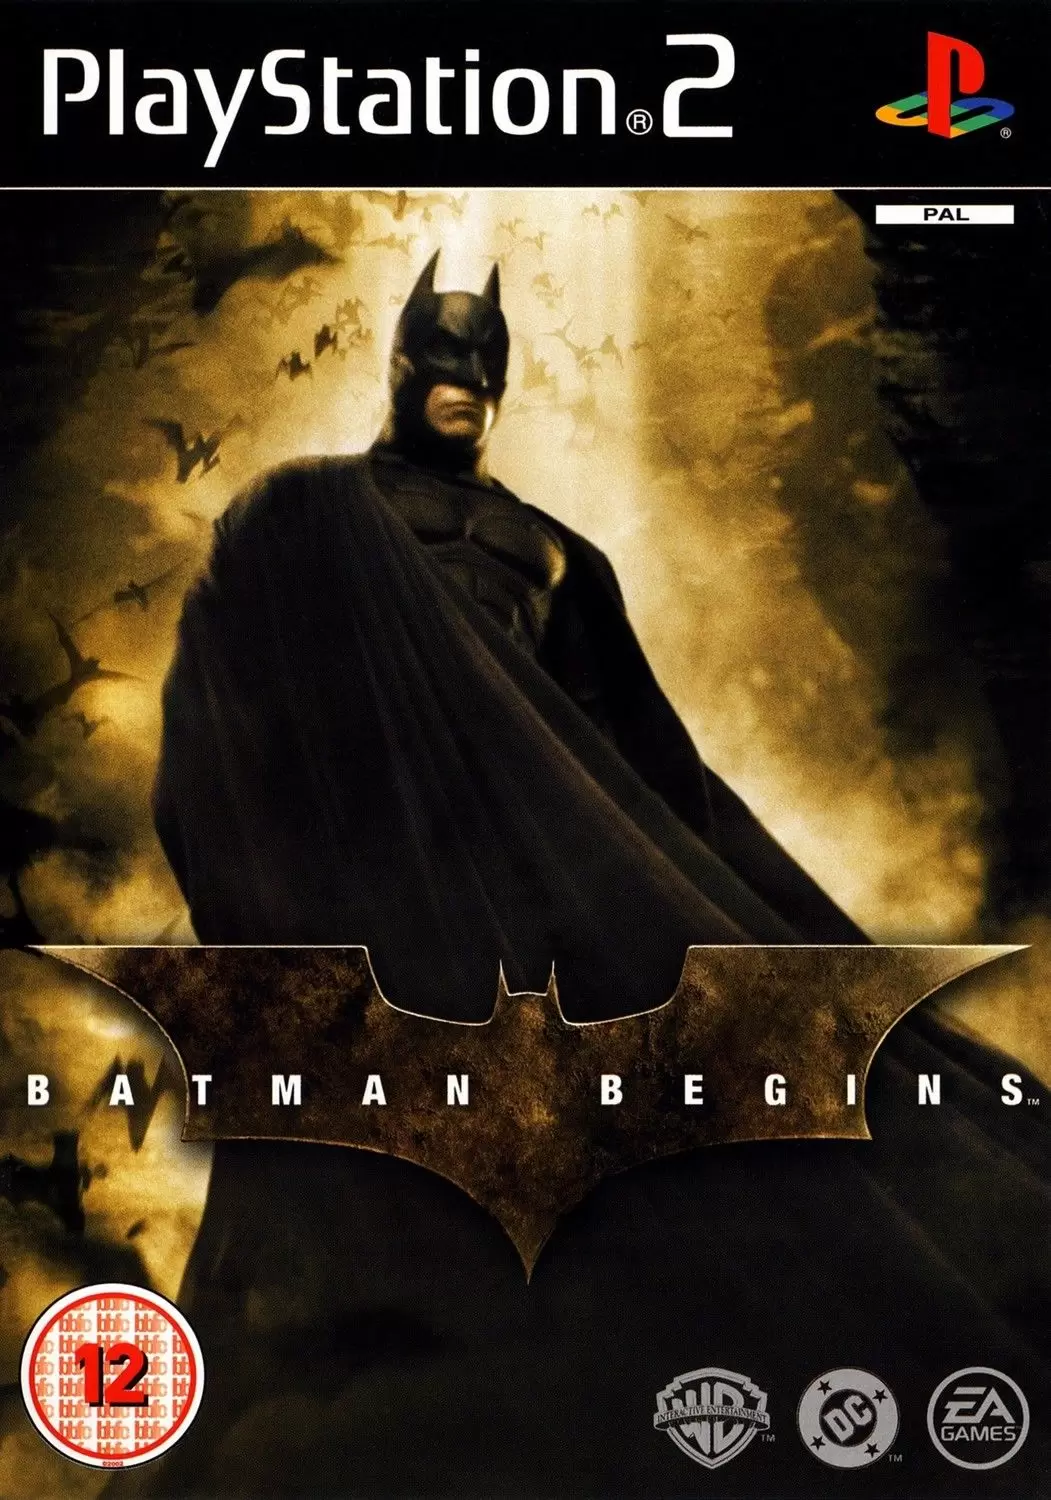 PS2 Games - Batman Begins